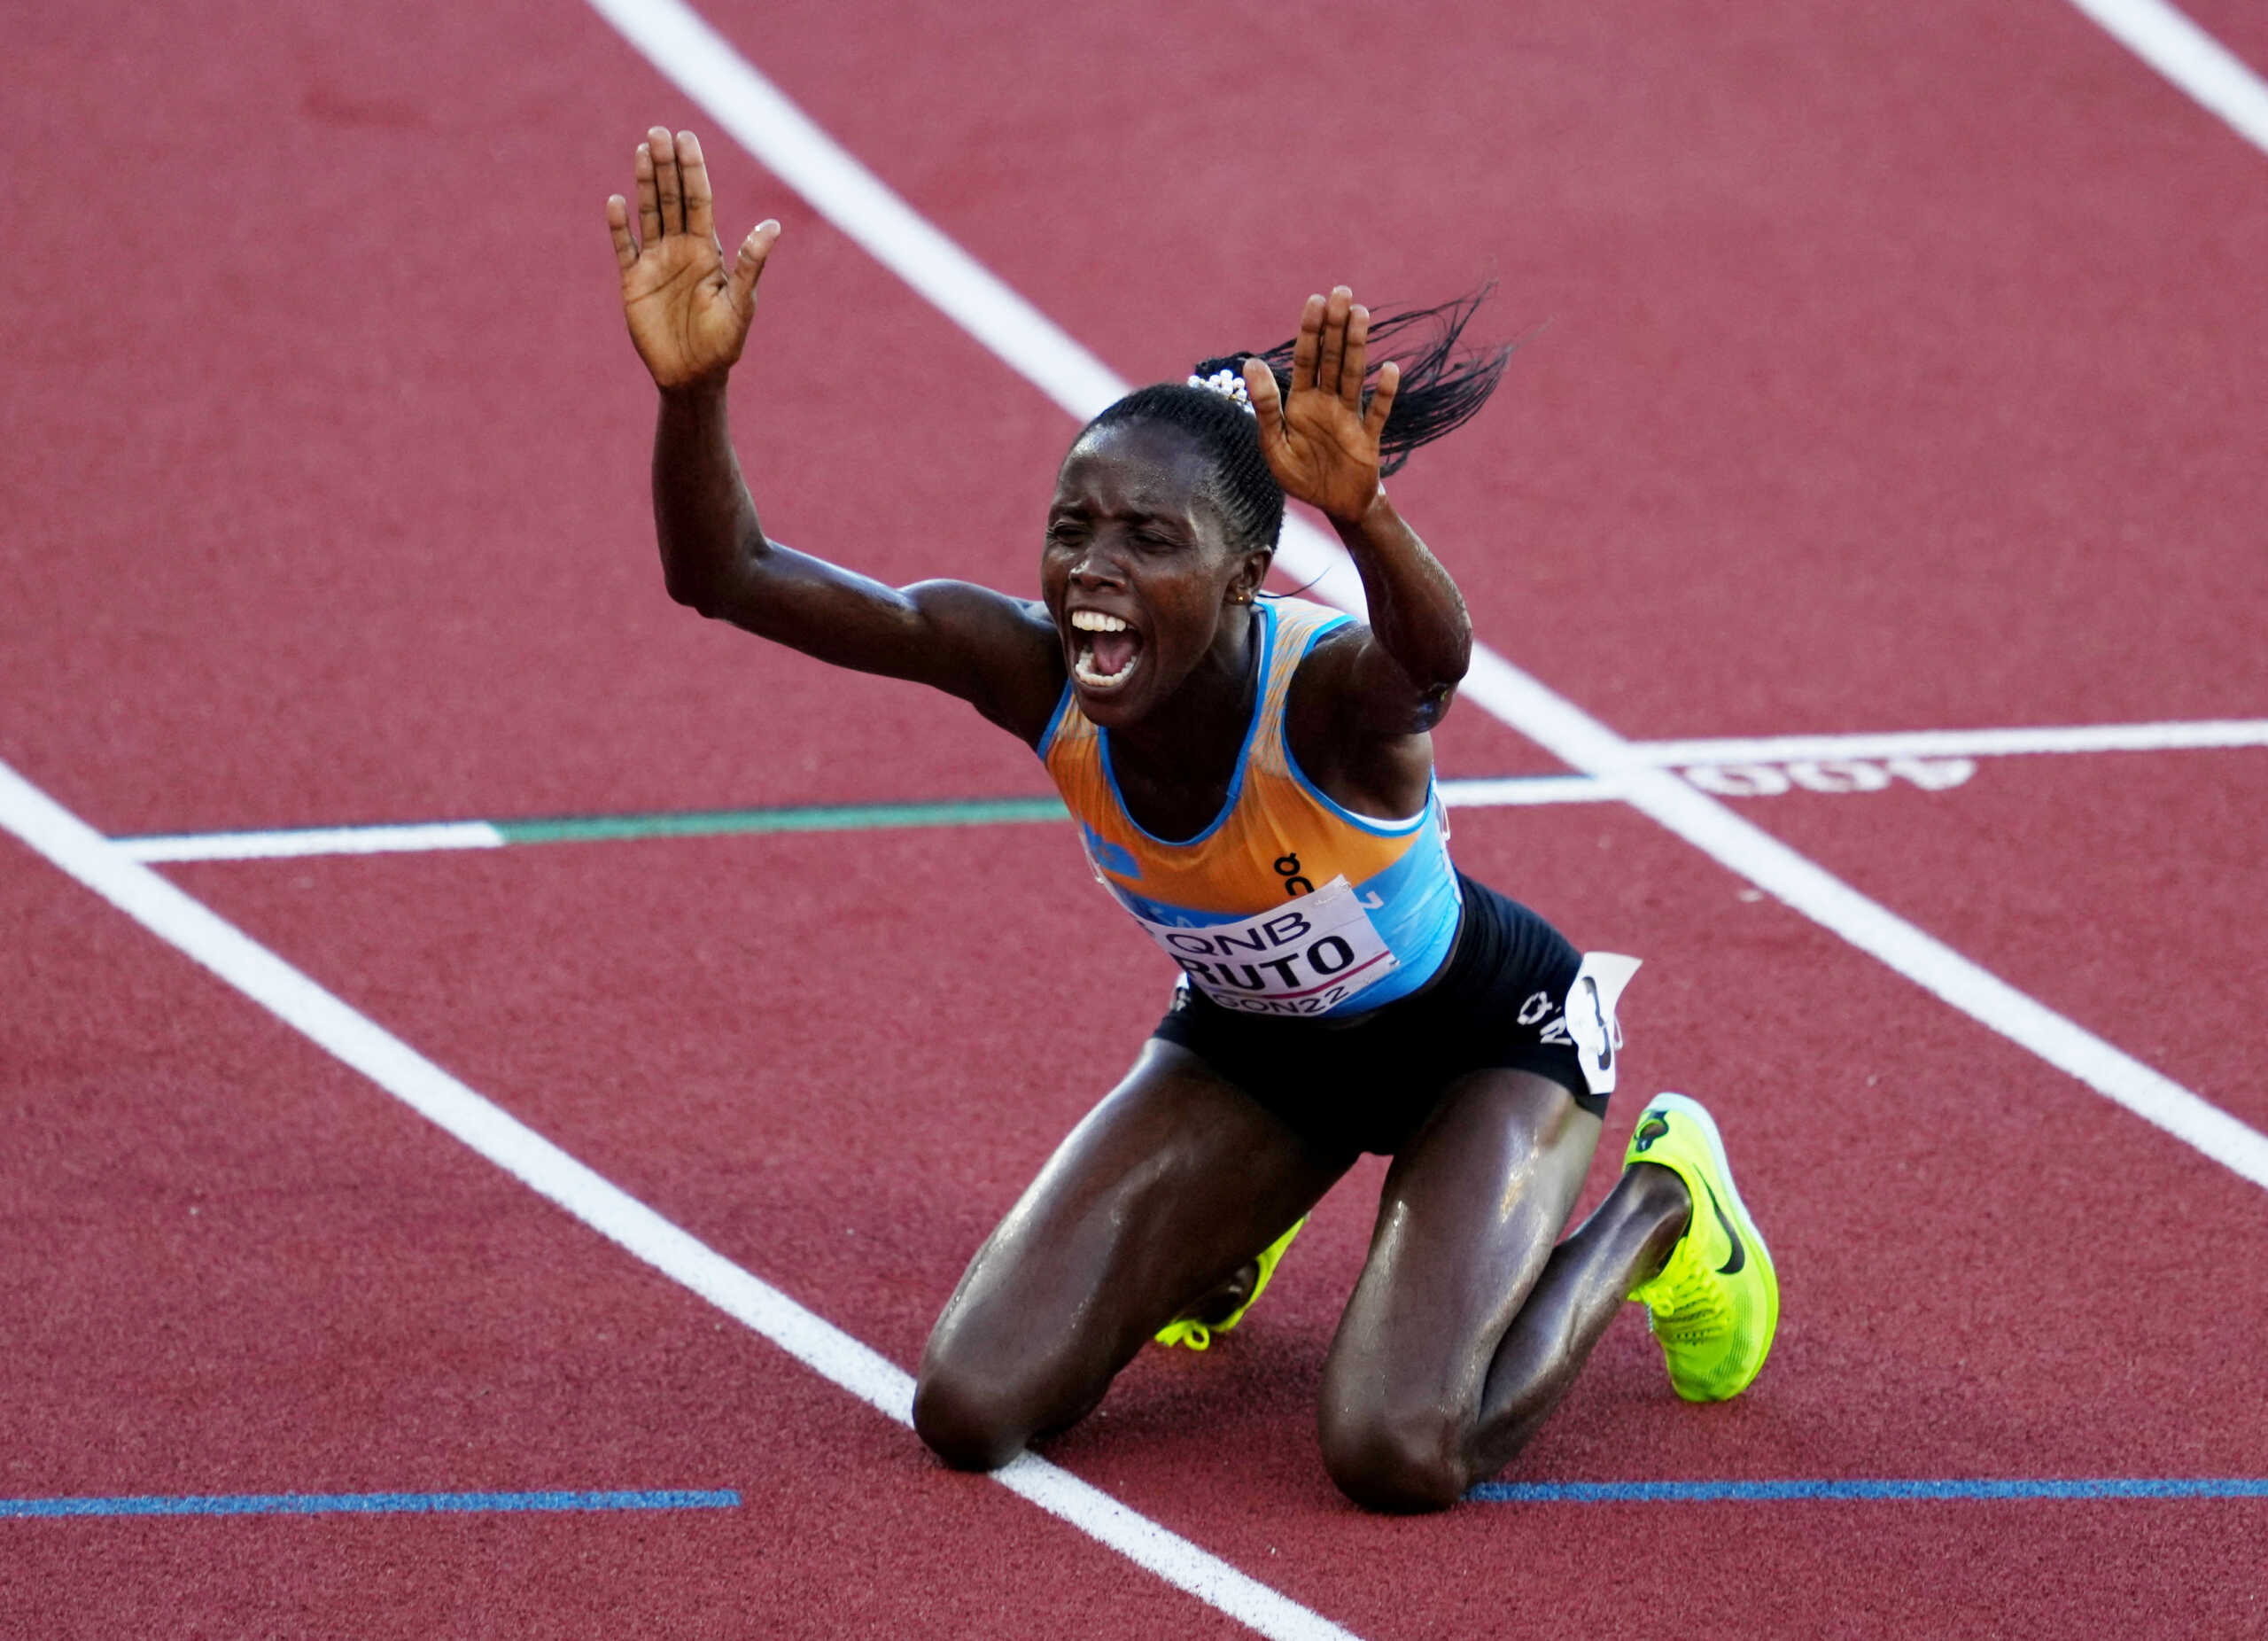 Παγκόσμιο Πρωτάθλημα στίβου: Η Κενυάτισσα Τζερούτο κατέκτησε το χρυσό μετάλλιο στα 3.000 μέτρα στιπλ για το Καζακστάν